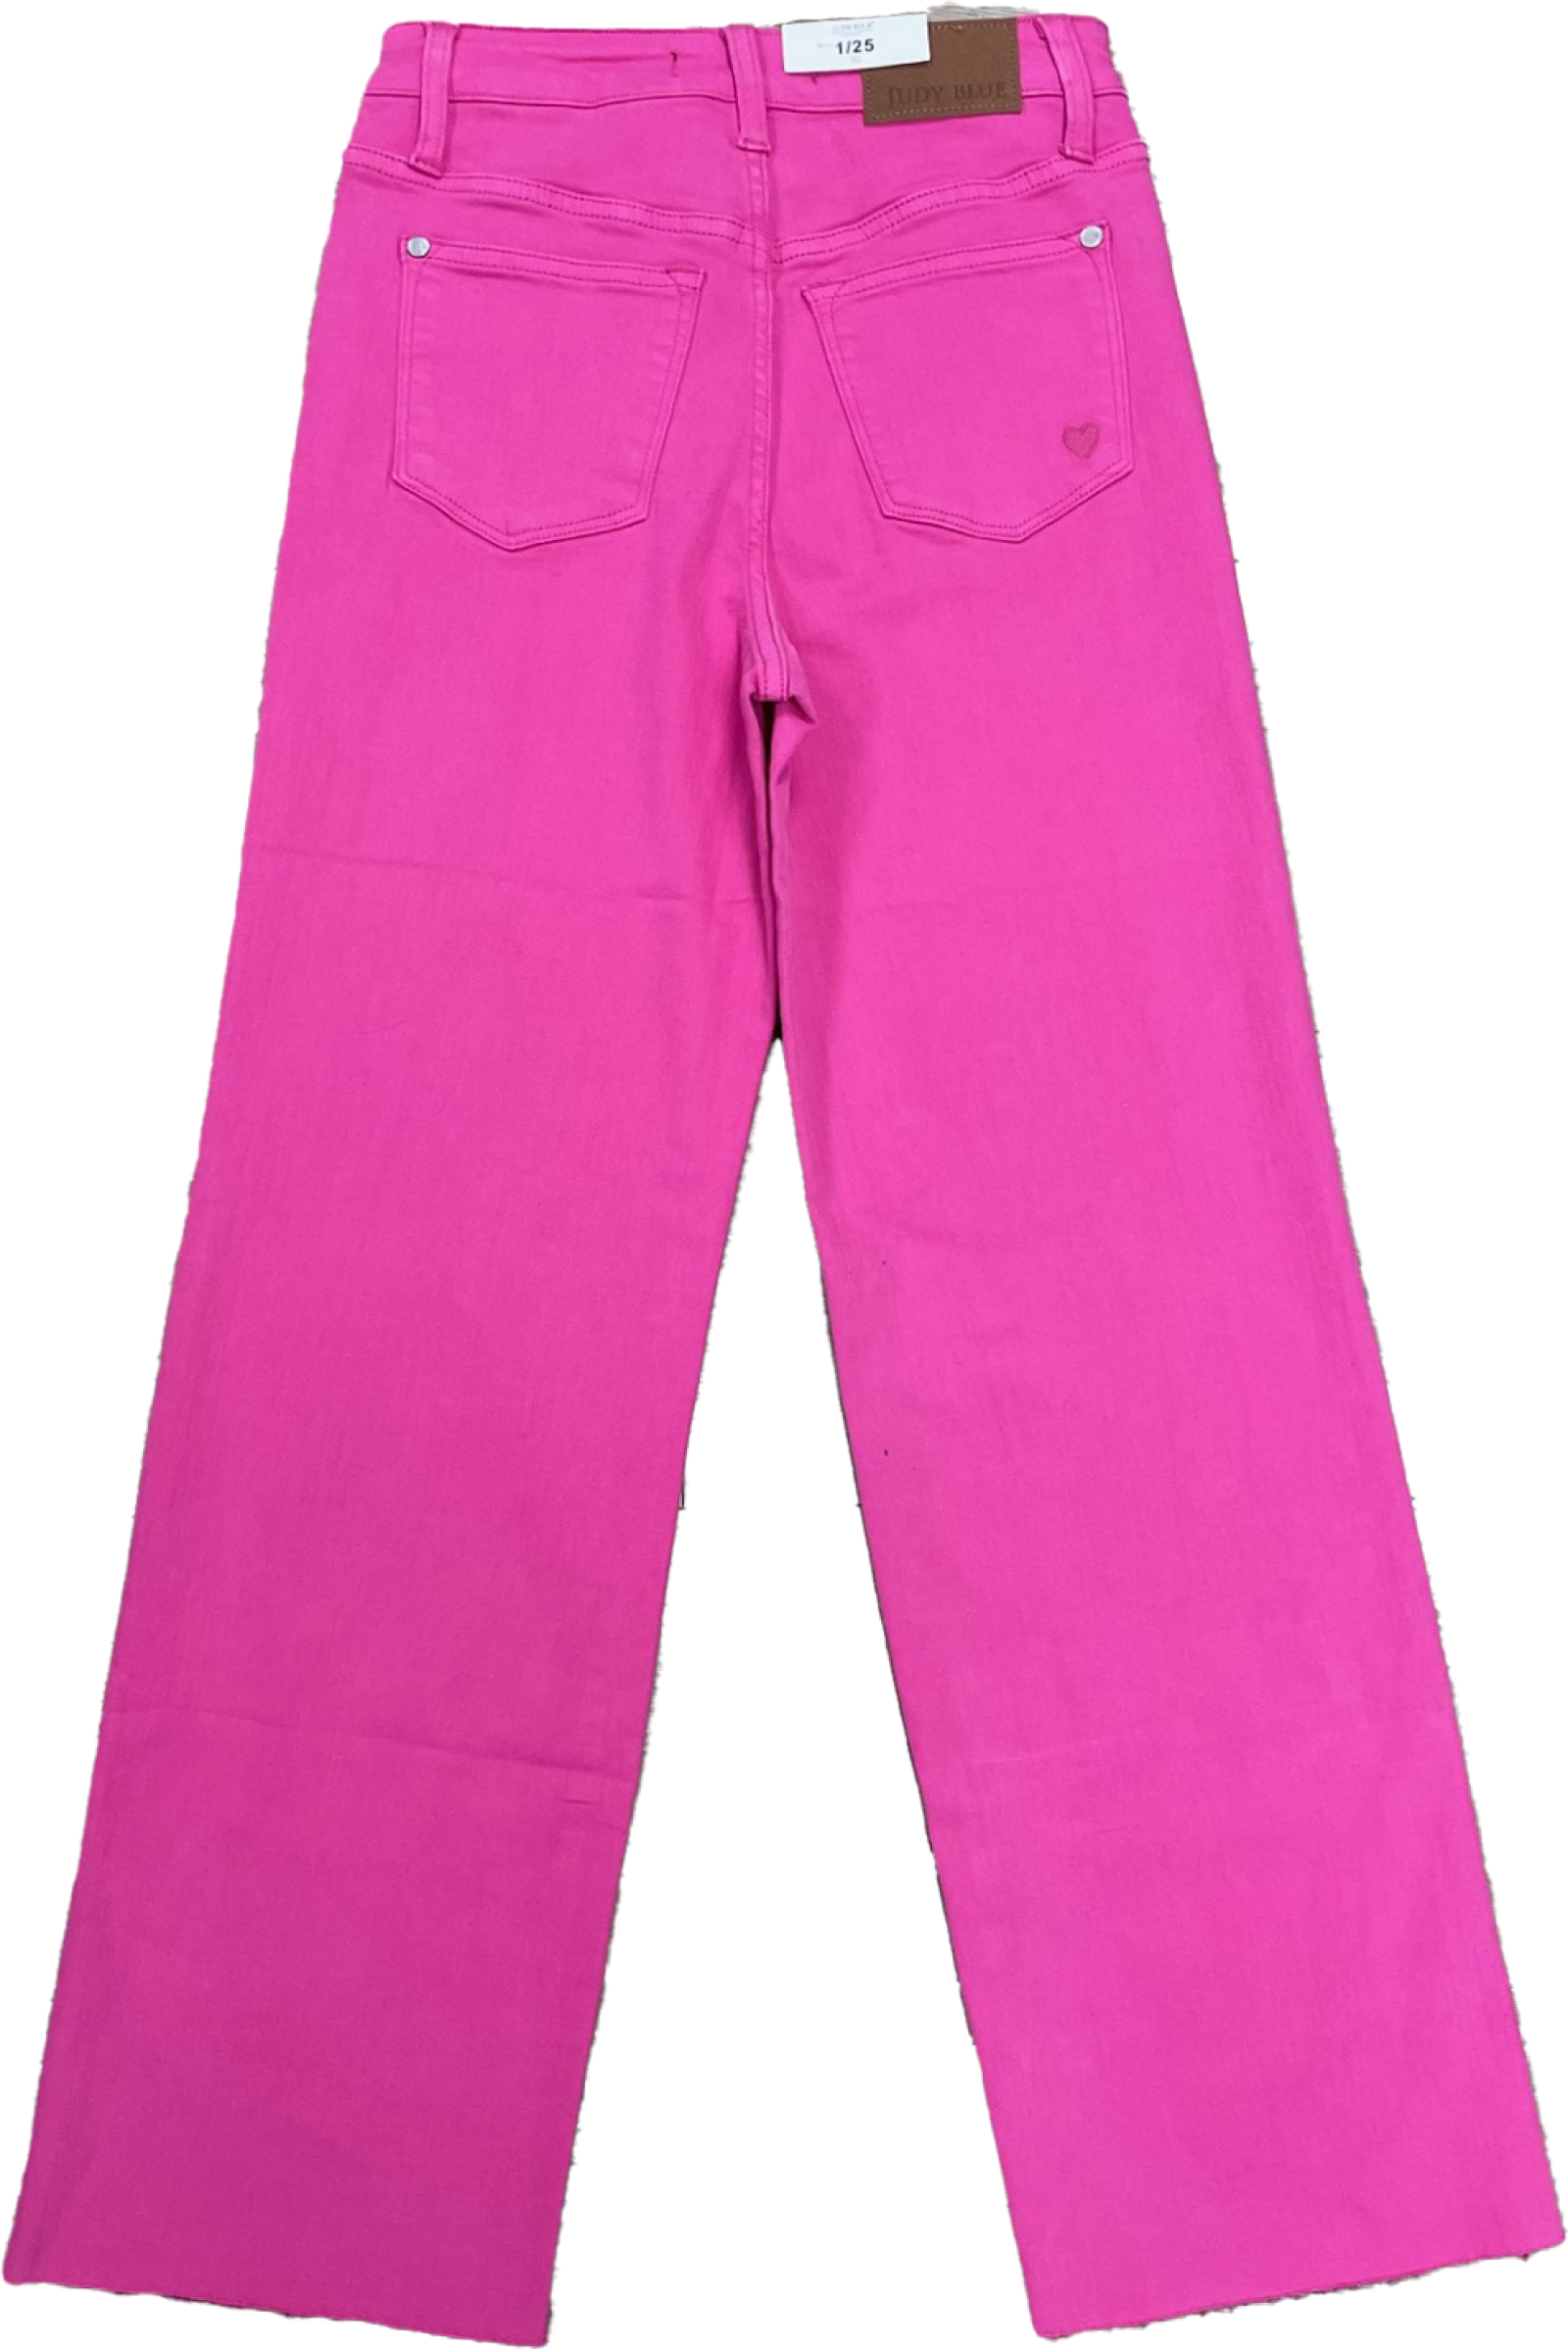 Judy Blue Hot Pink High Waist 90's Straight Jeans